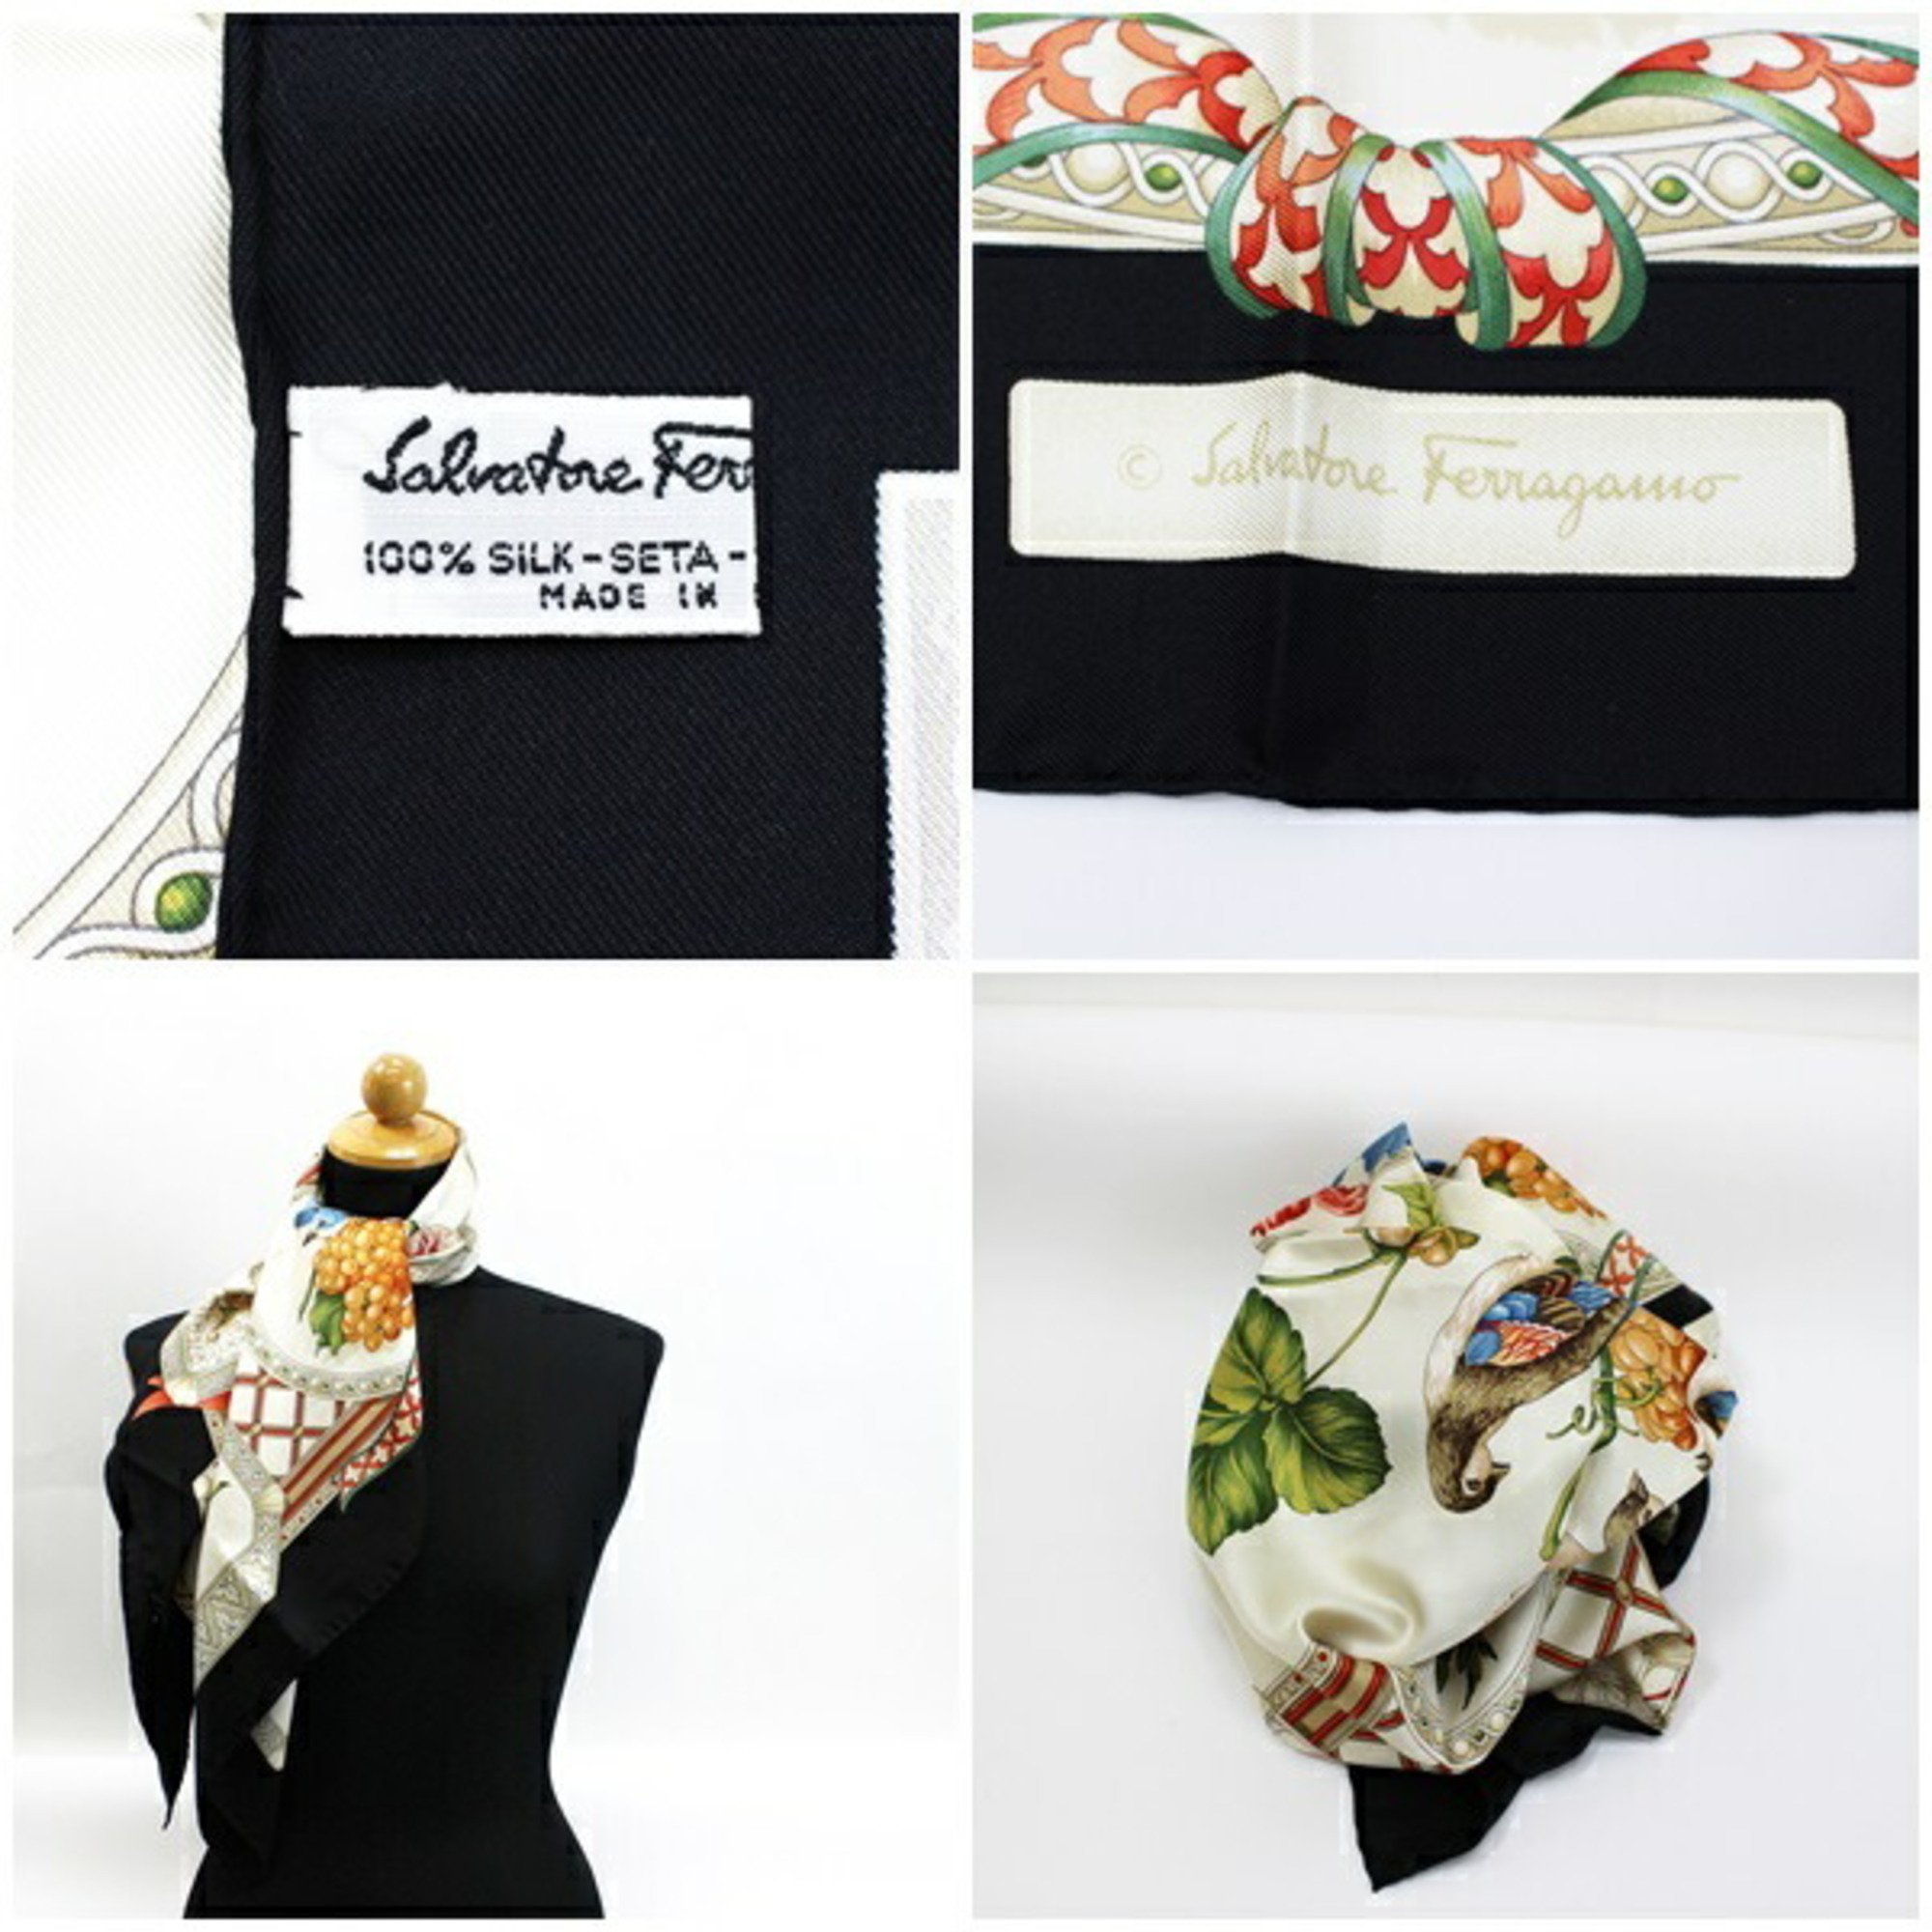 Salvatore Ferragamo silk scarf muffler off-white x black bird/fruit pattern SALVATORE FERRAGAMO ladies